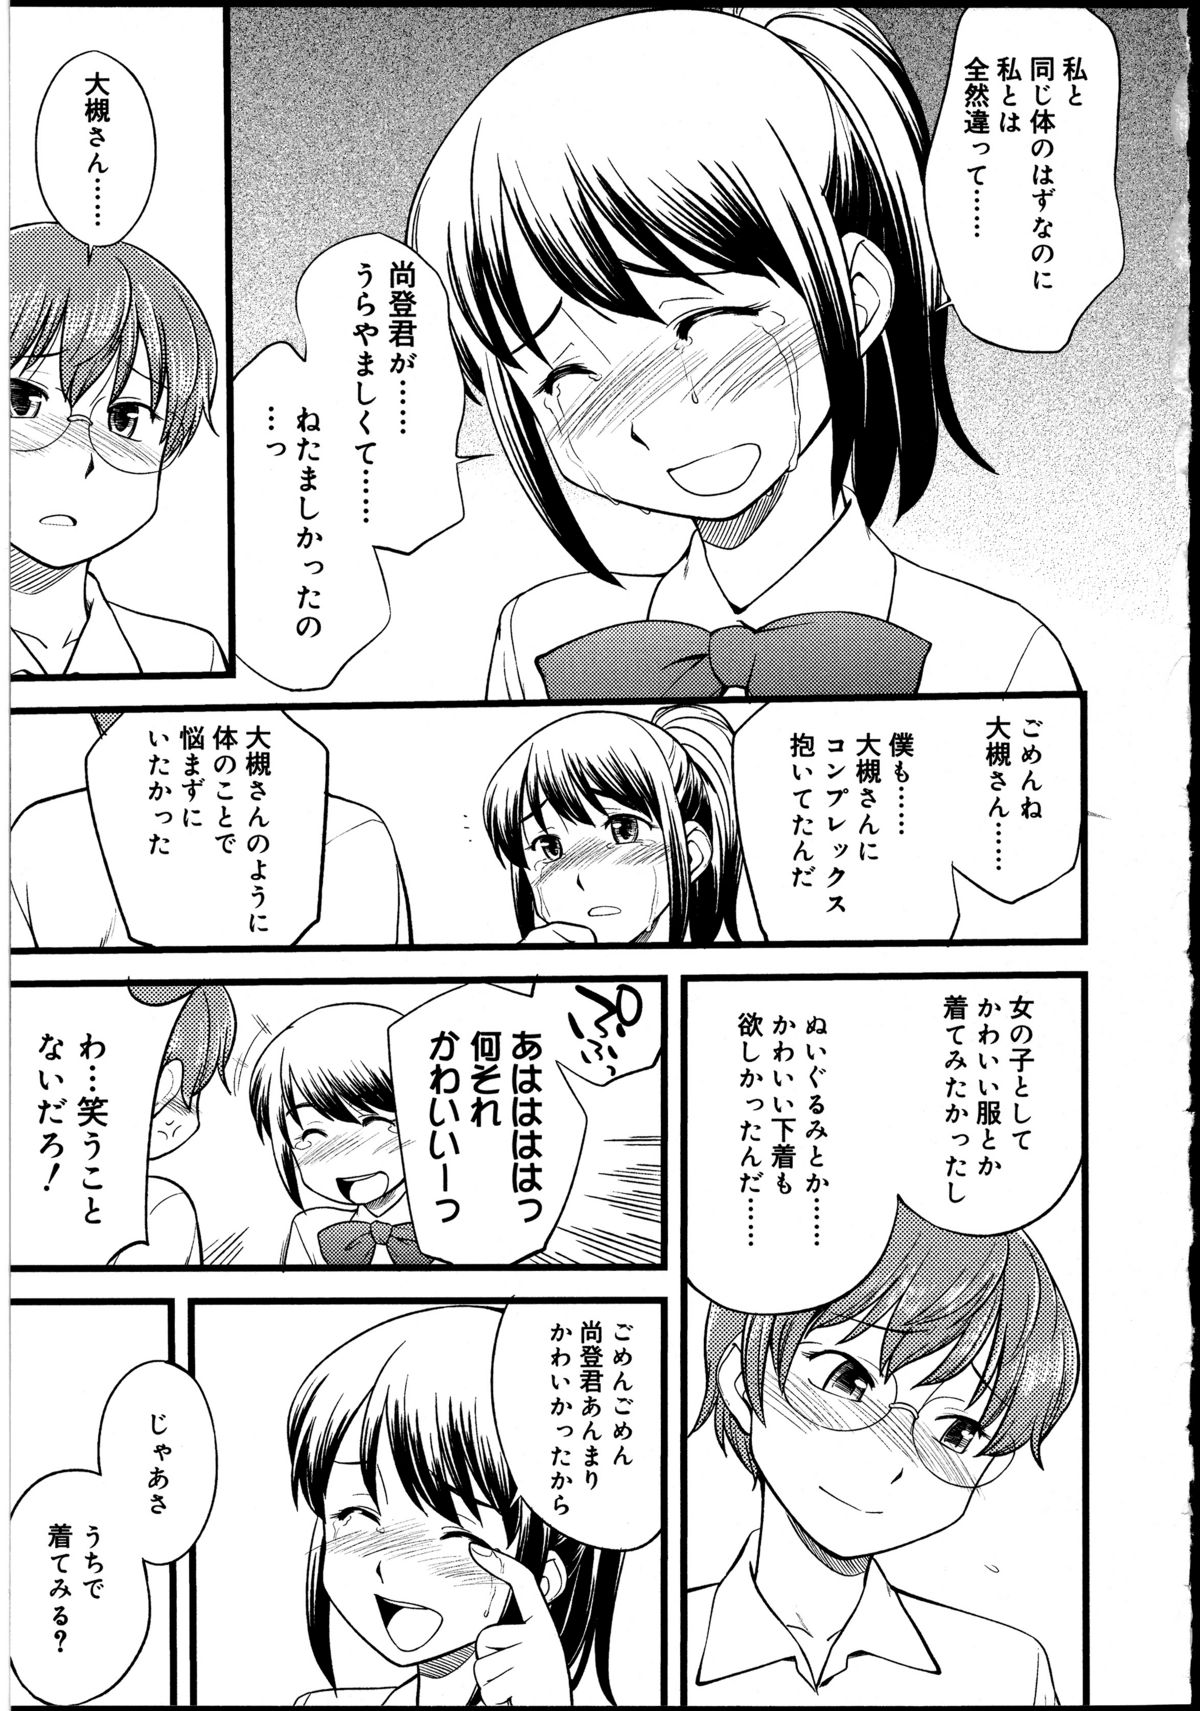 [Anthology] Futanarikko no Sekai 2 page 28 full